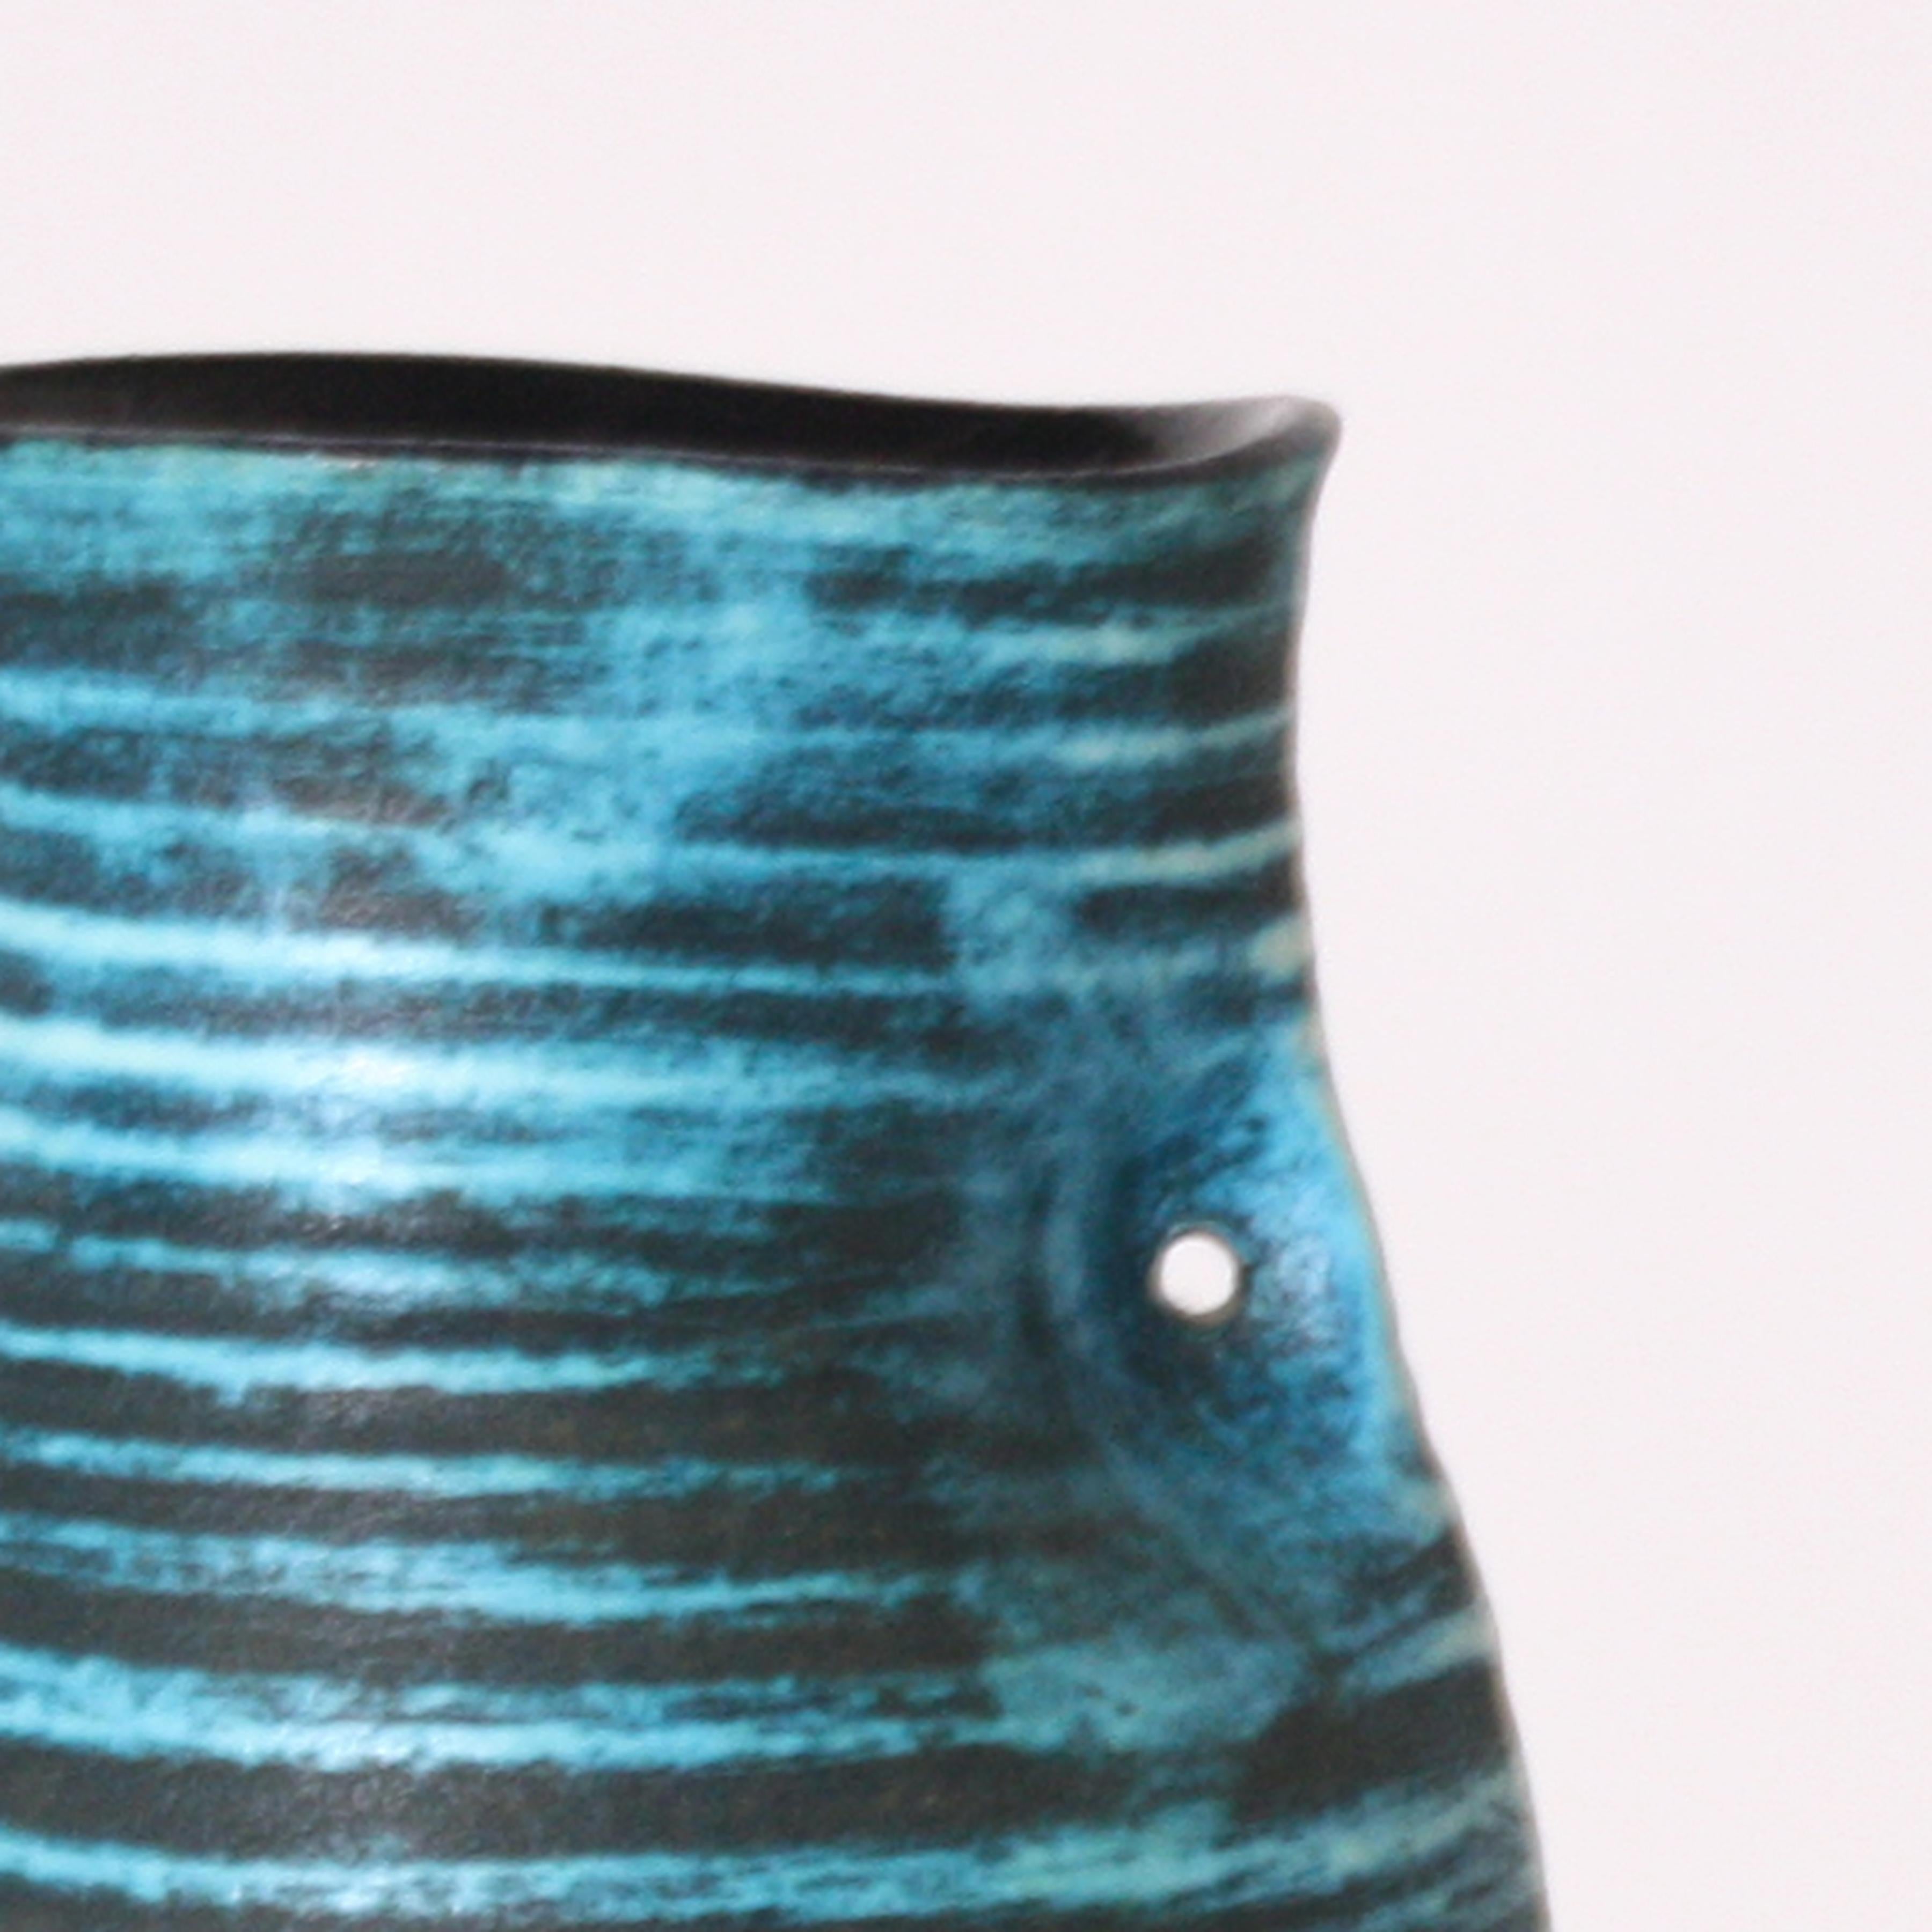 Accolay ceramic turquoise vase, circa 1950.